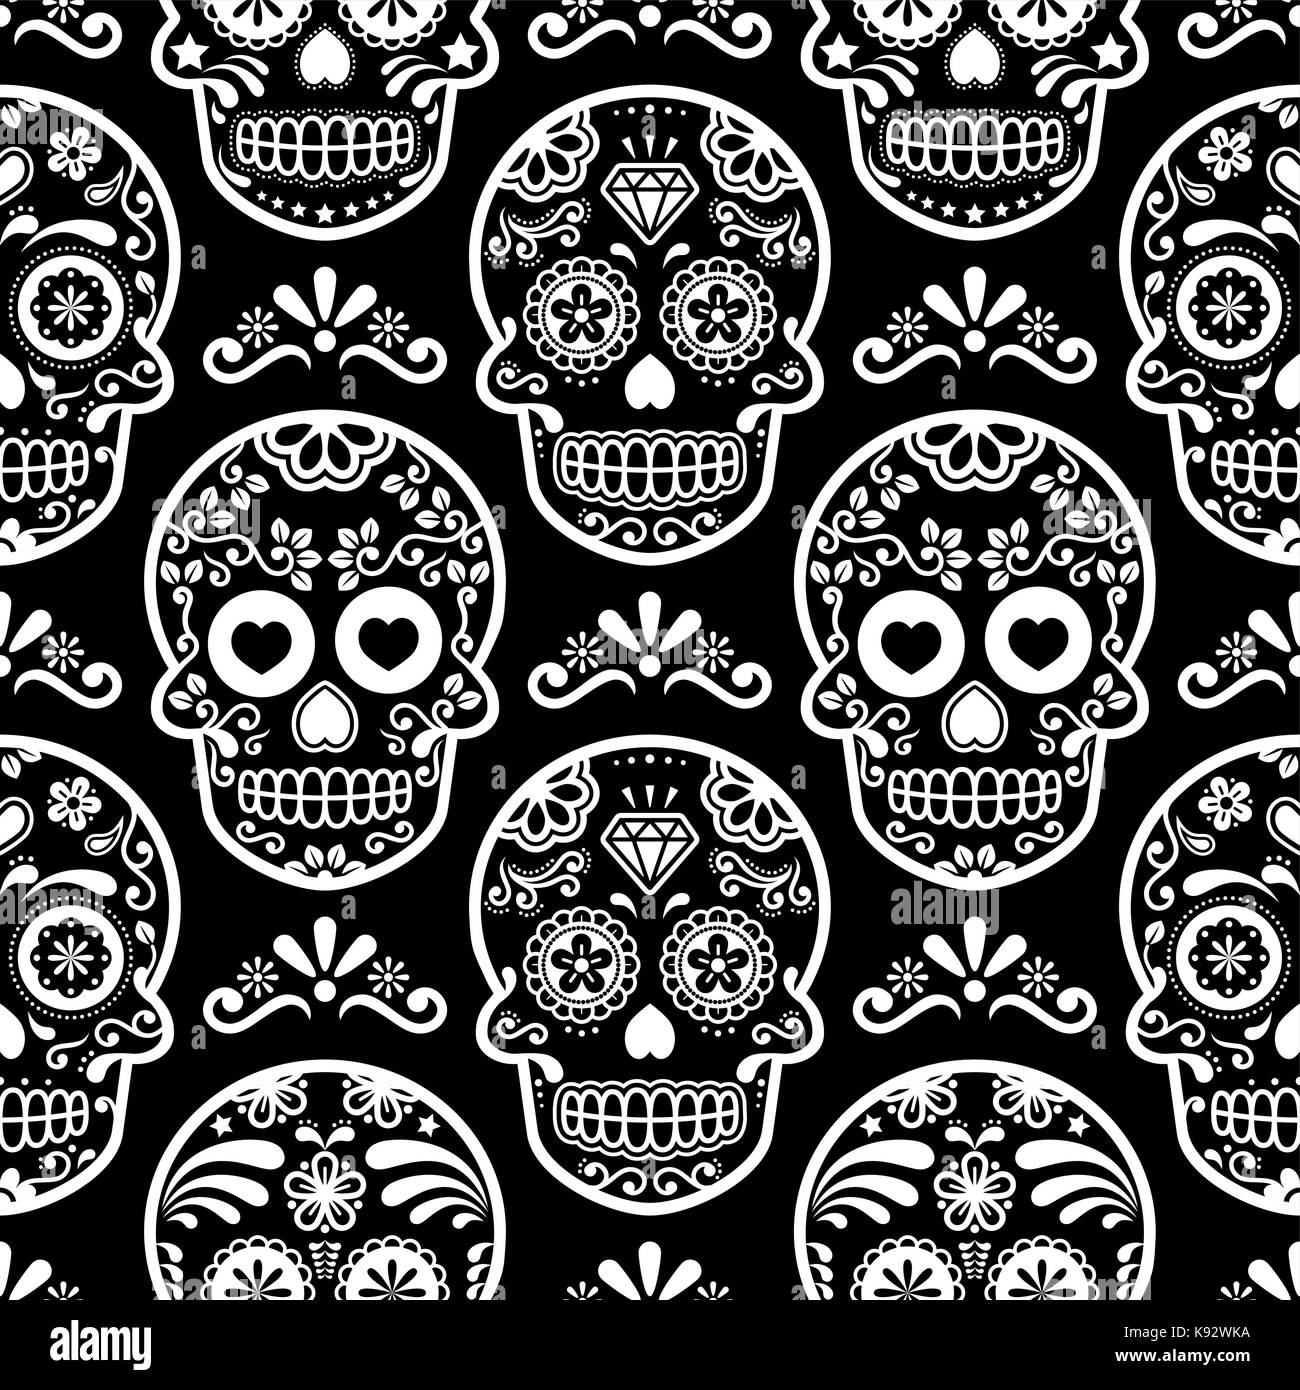 Vecteur crâne halloween modèle sans couture, cuisine mexicaine cute black skulls avec os design, dia de los muertos background Illustration de Vecteur